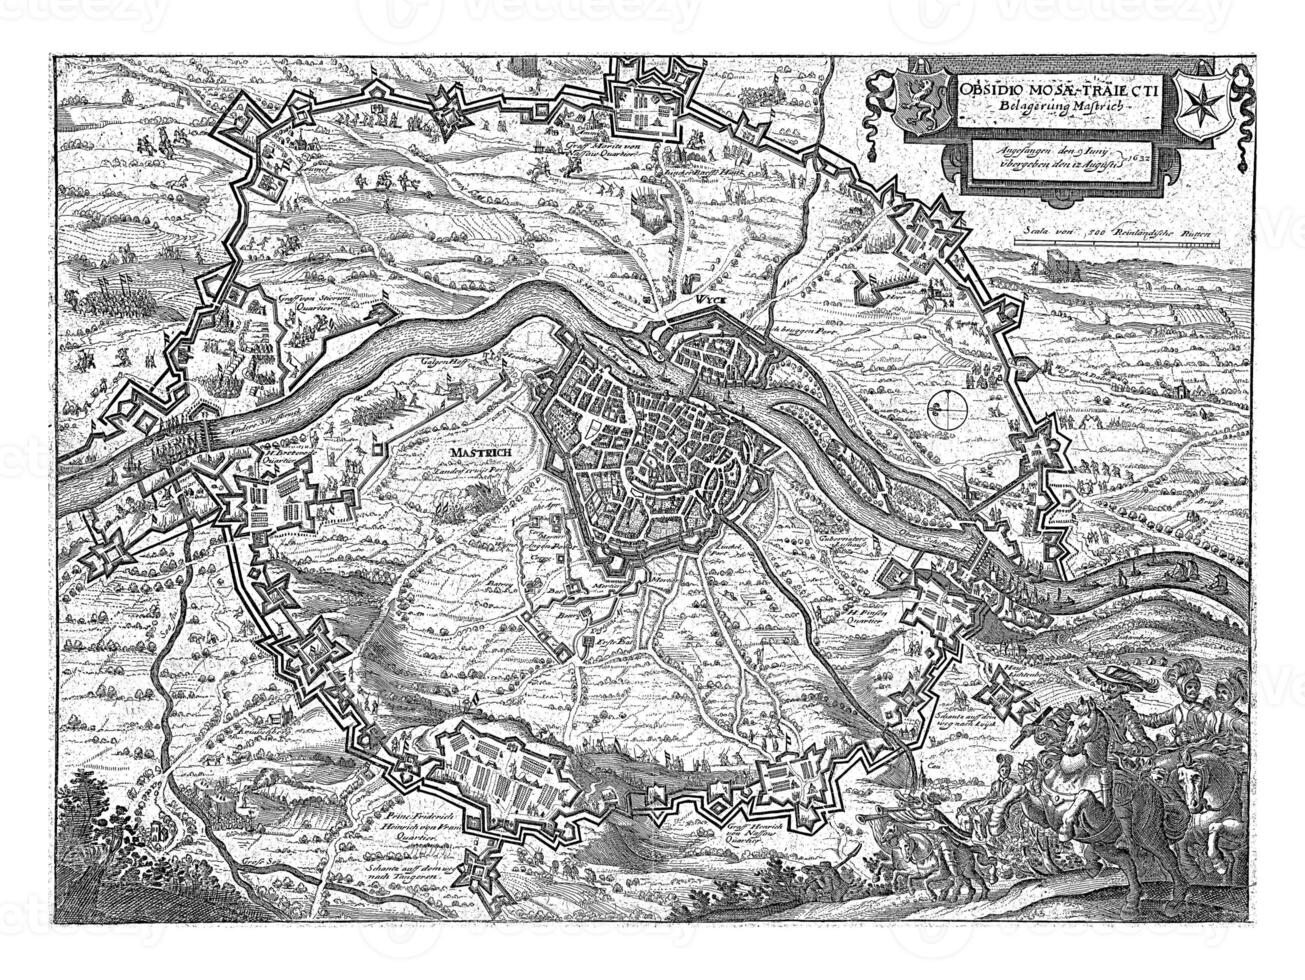 Siege of Maastricht, 1632 photo